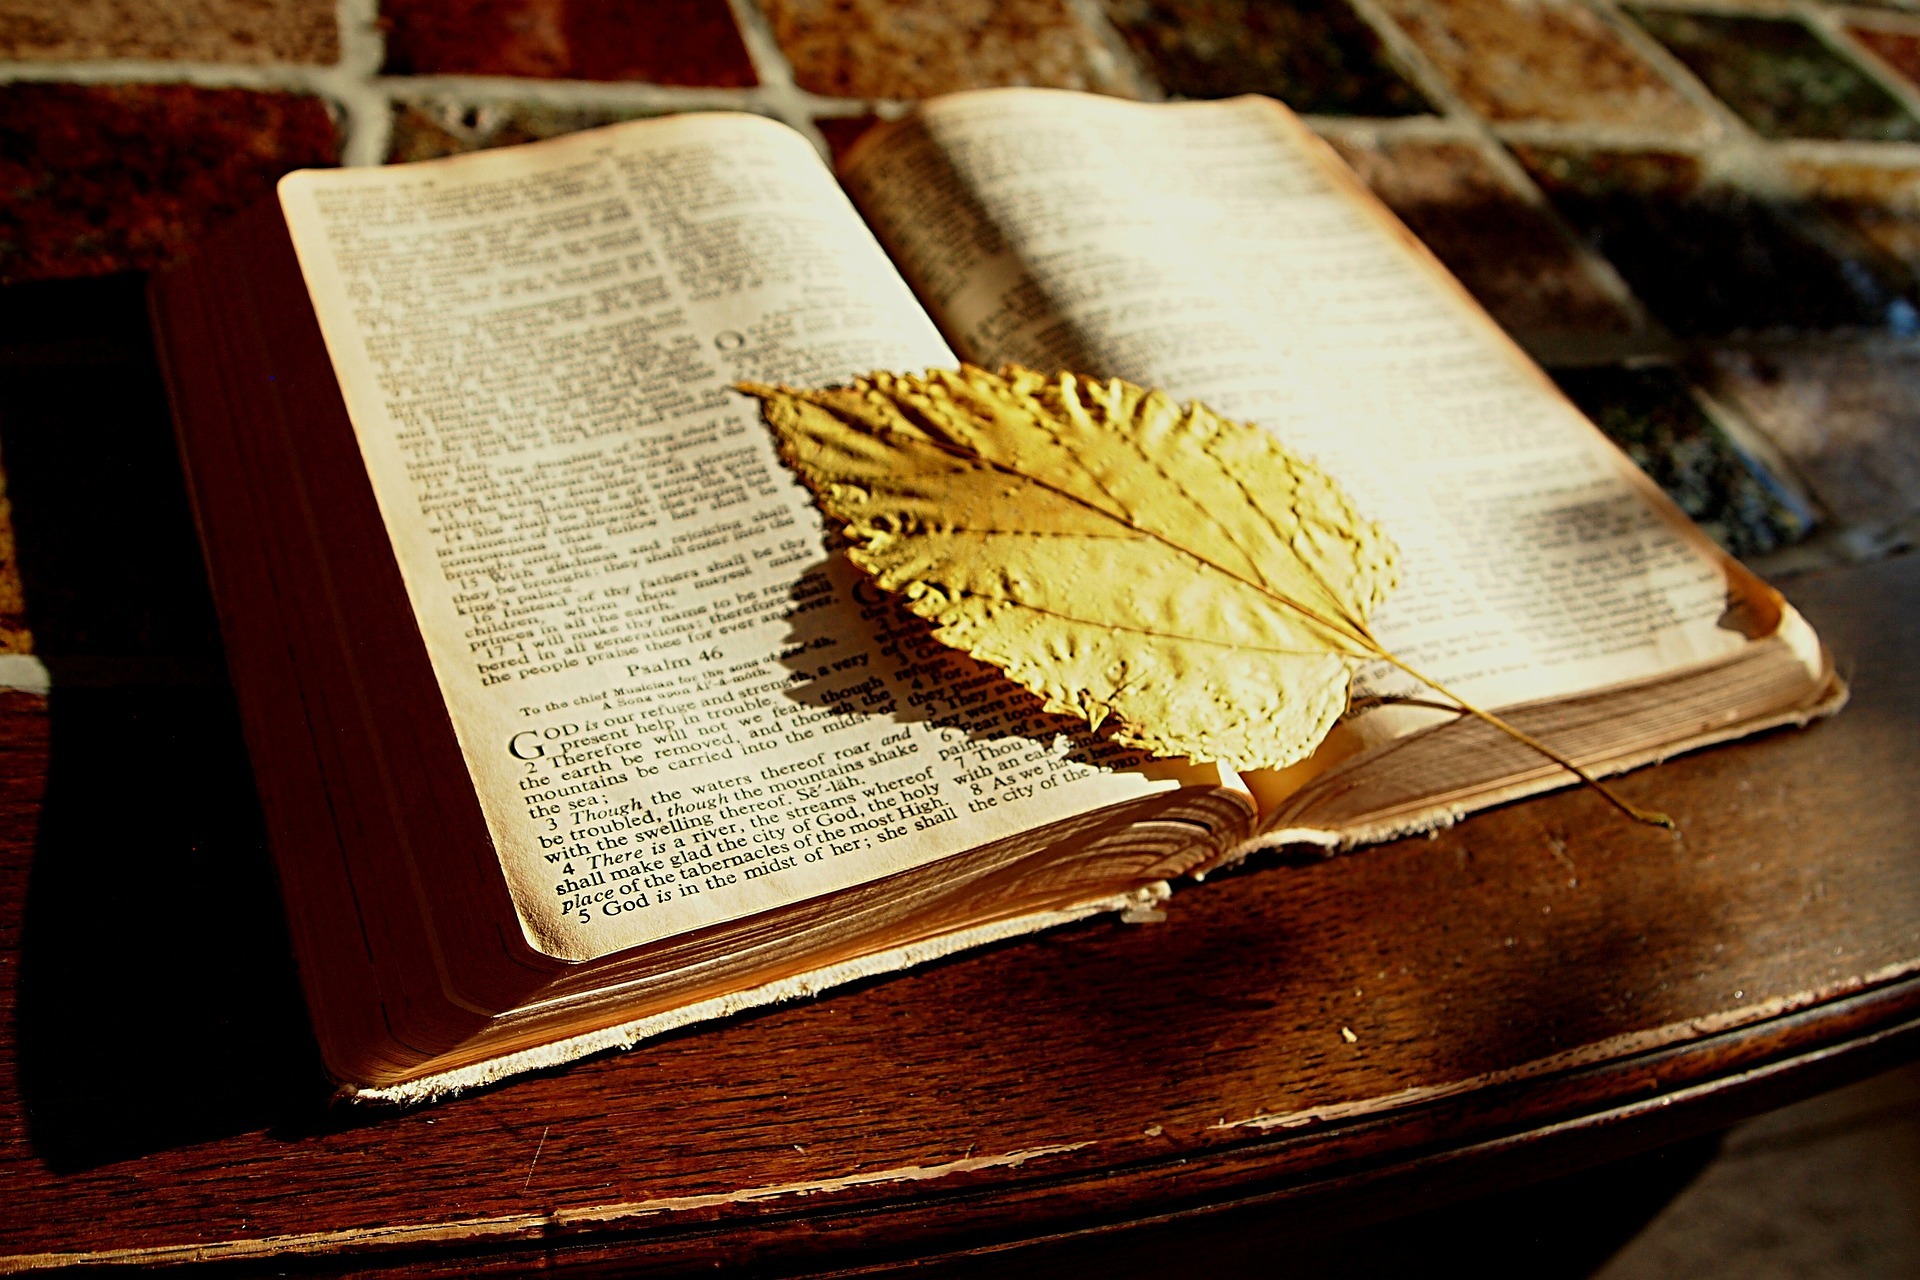 Davi na Bíblia: Uma Jornada de Fé, Coragem e Realeza